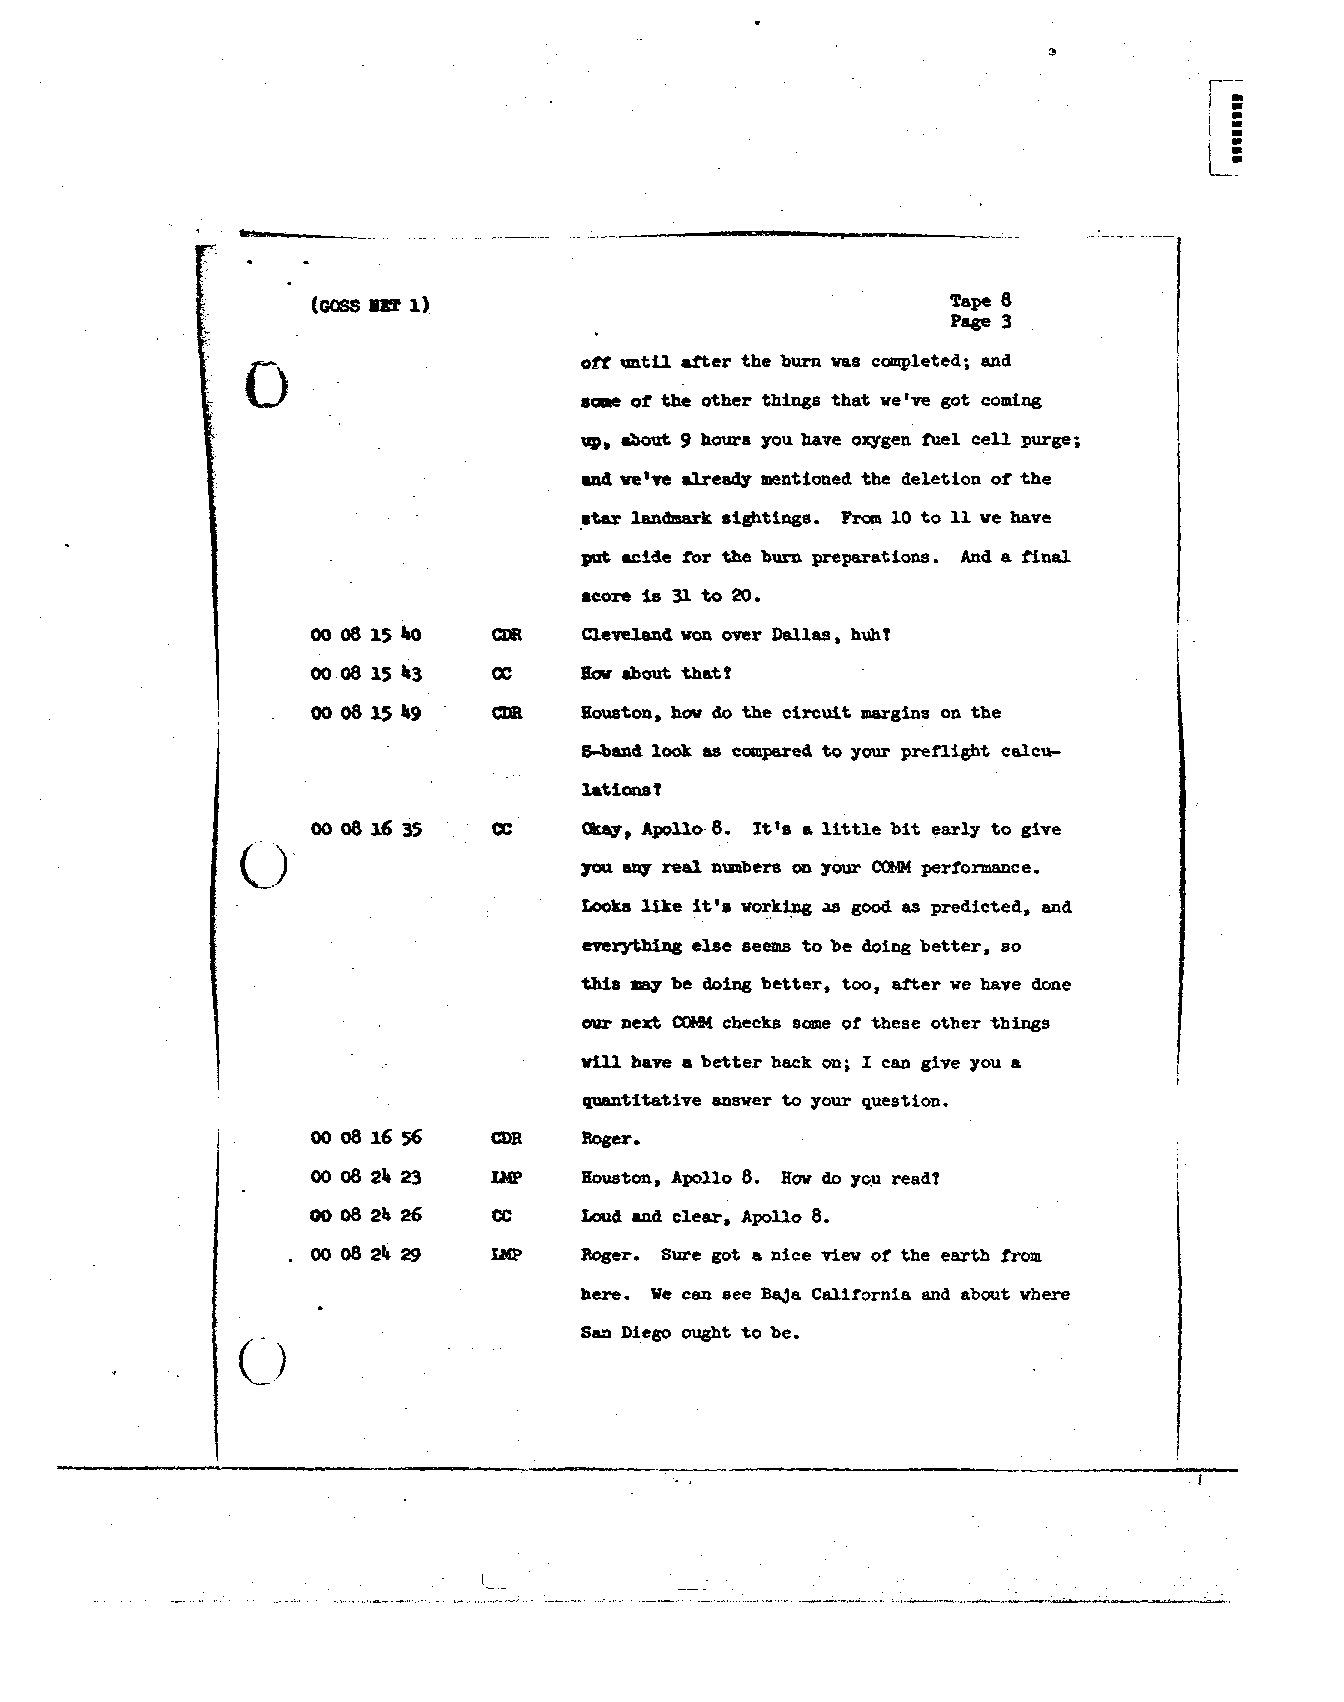 Page 75 of Apollo 8’s original transcript